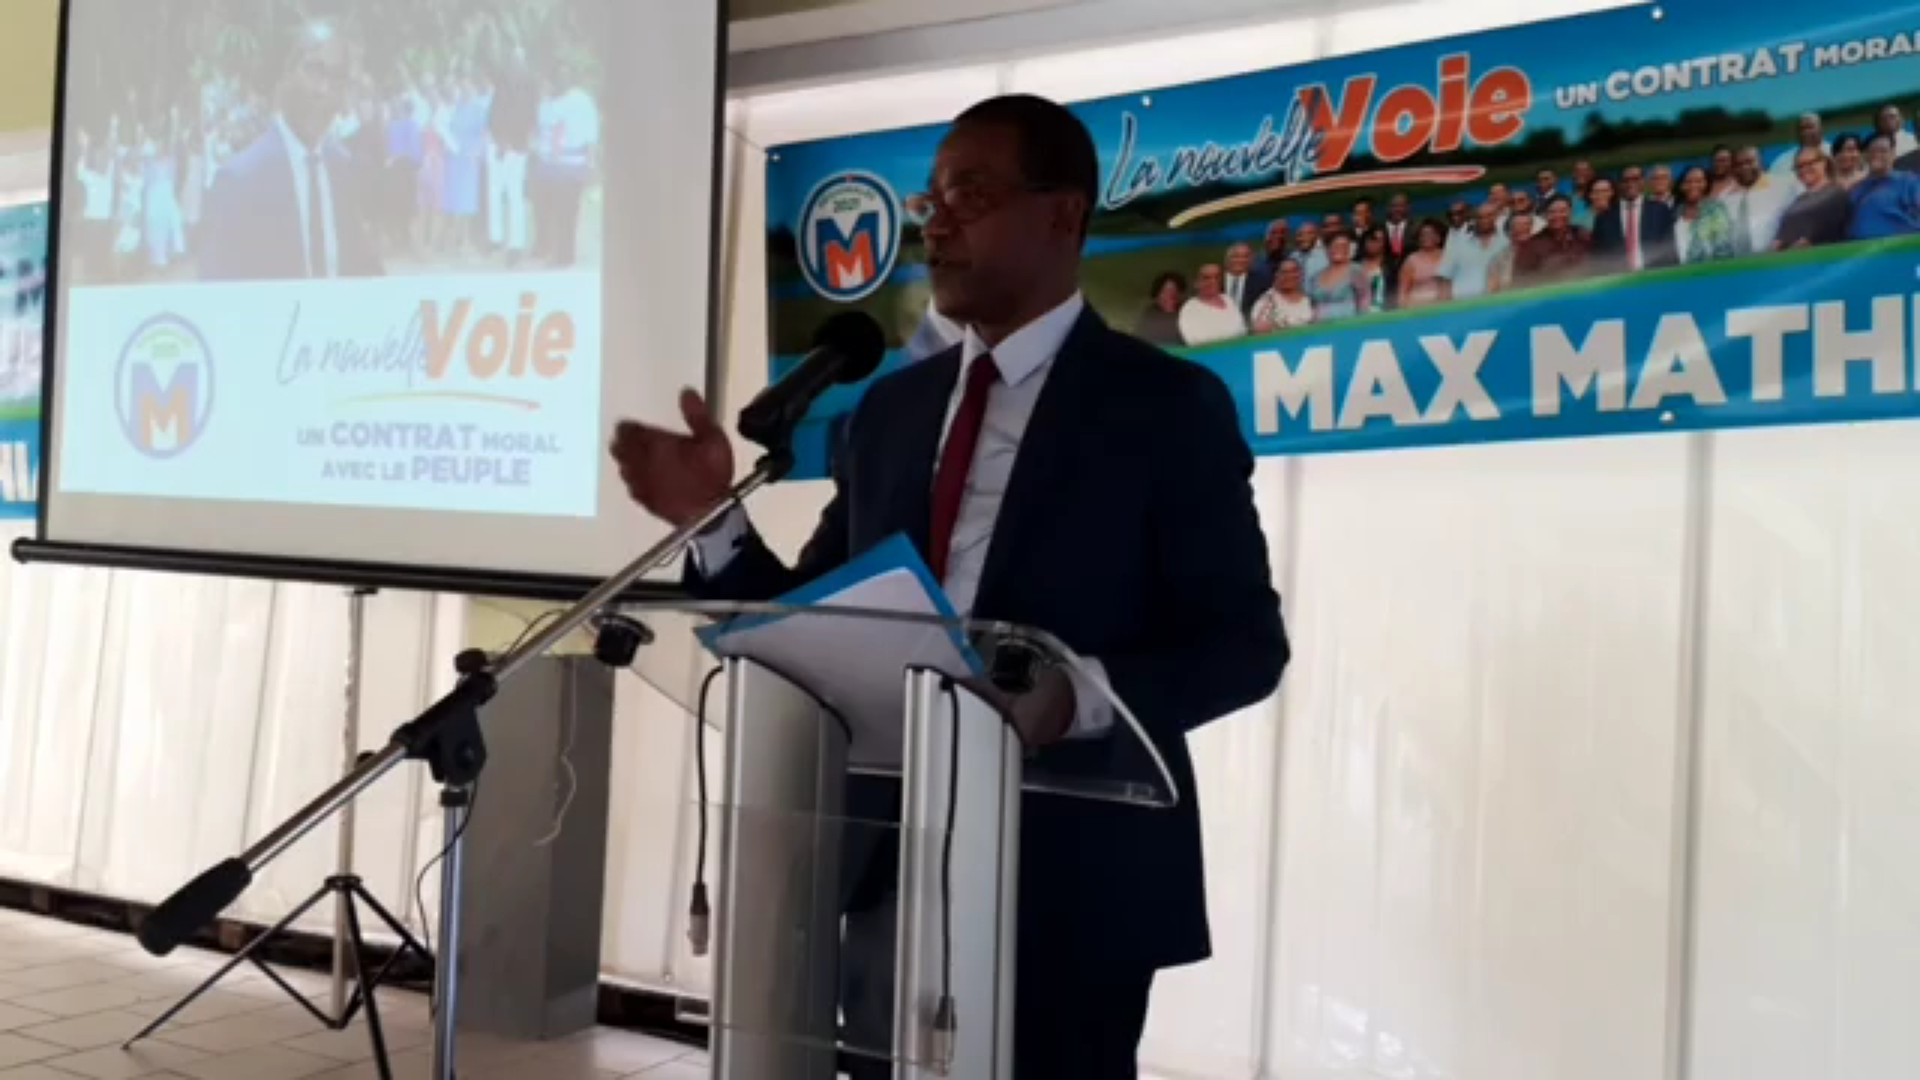 [Vidéo] Onews Guadeloupe. Max MAHIASIN lors de la présentation de sa liste. La Nouvelle voie